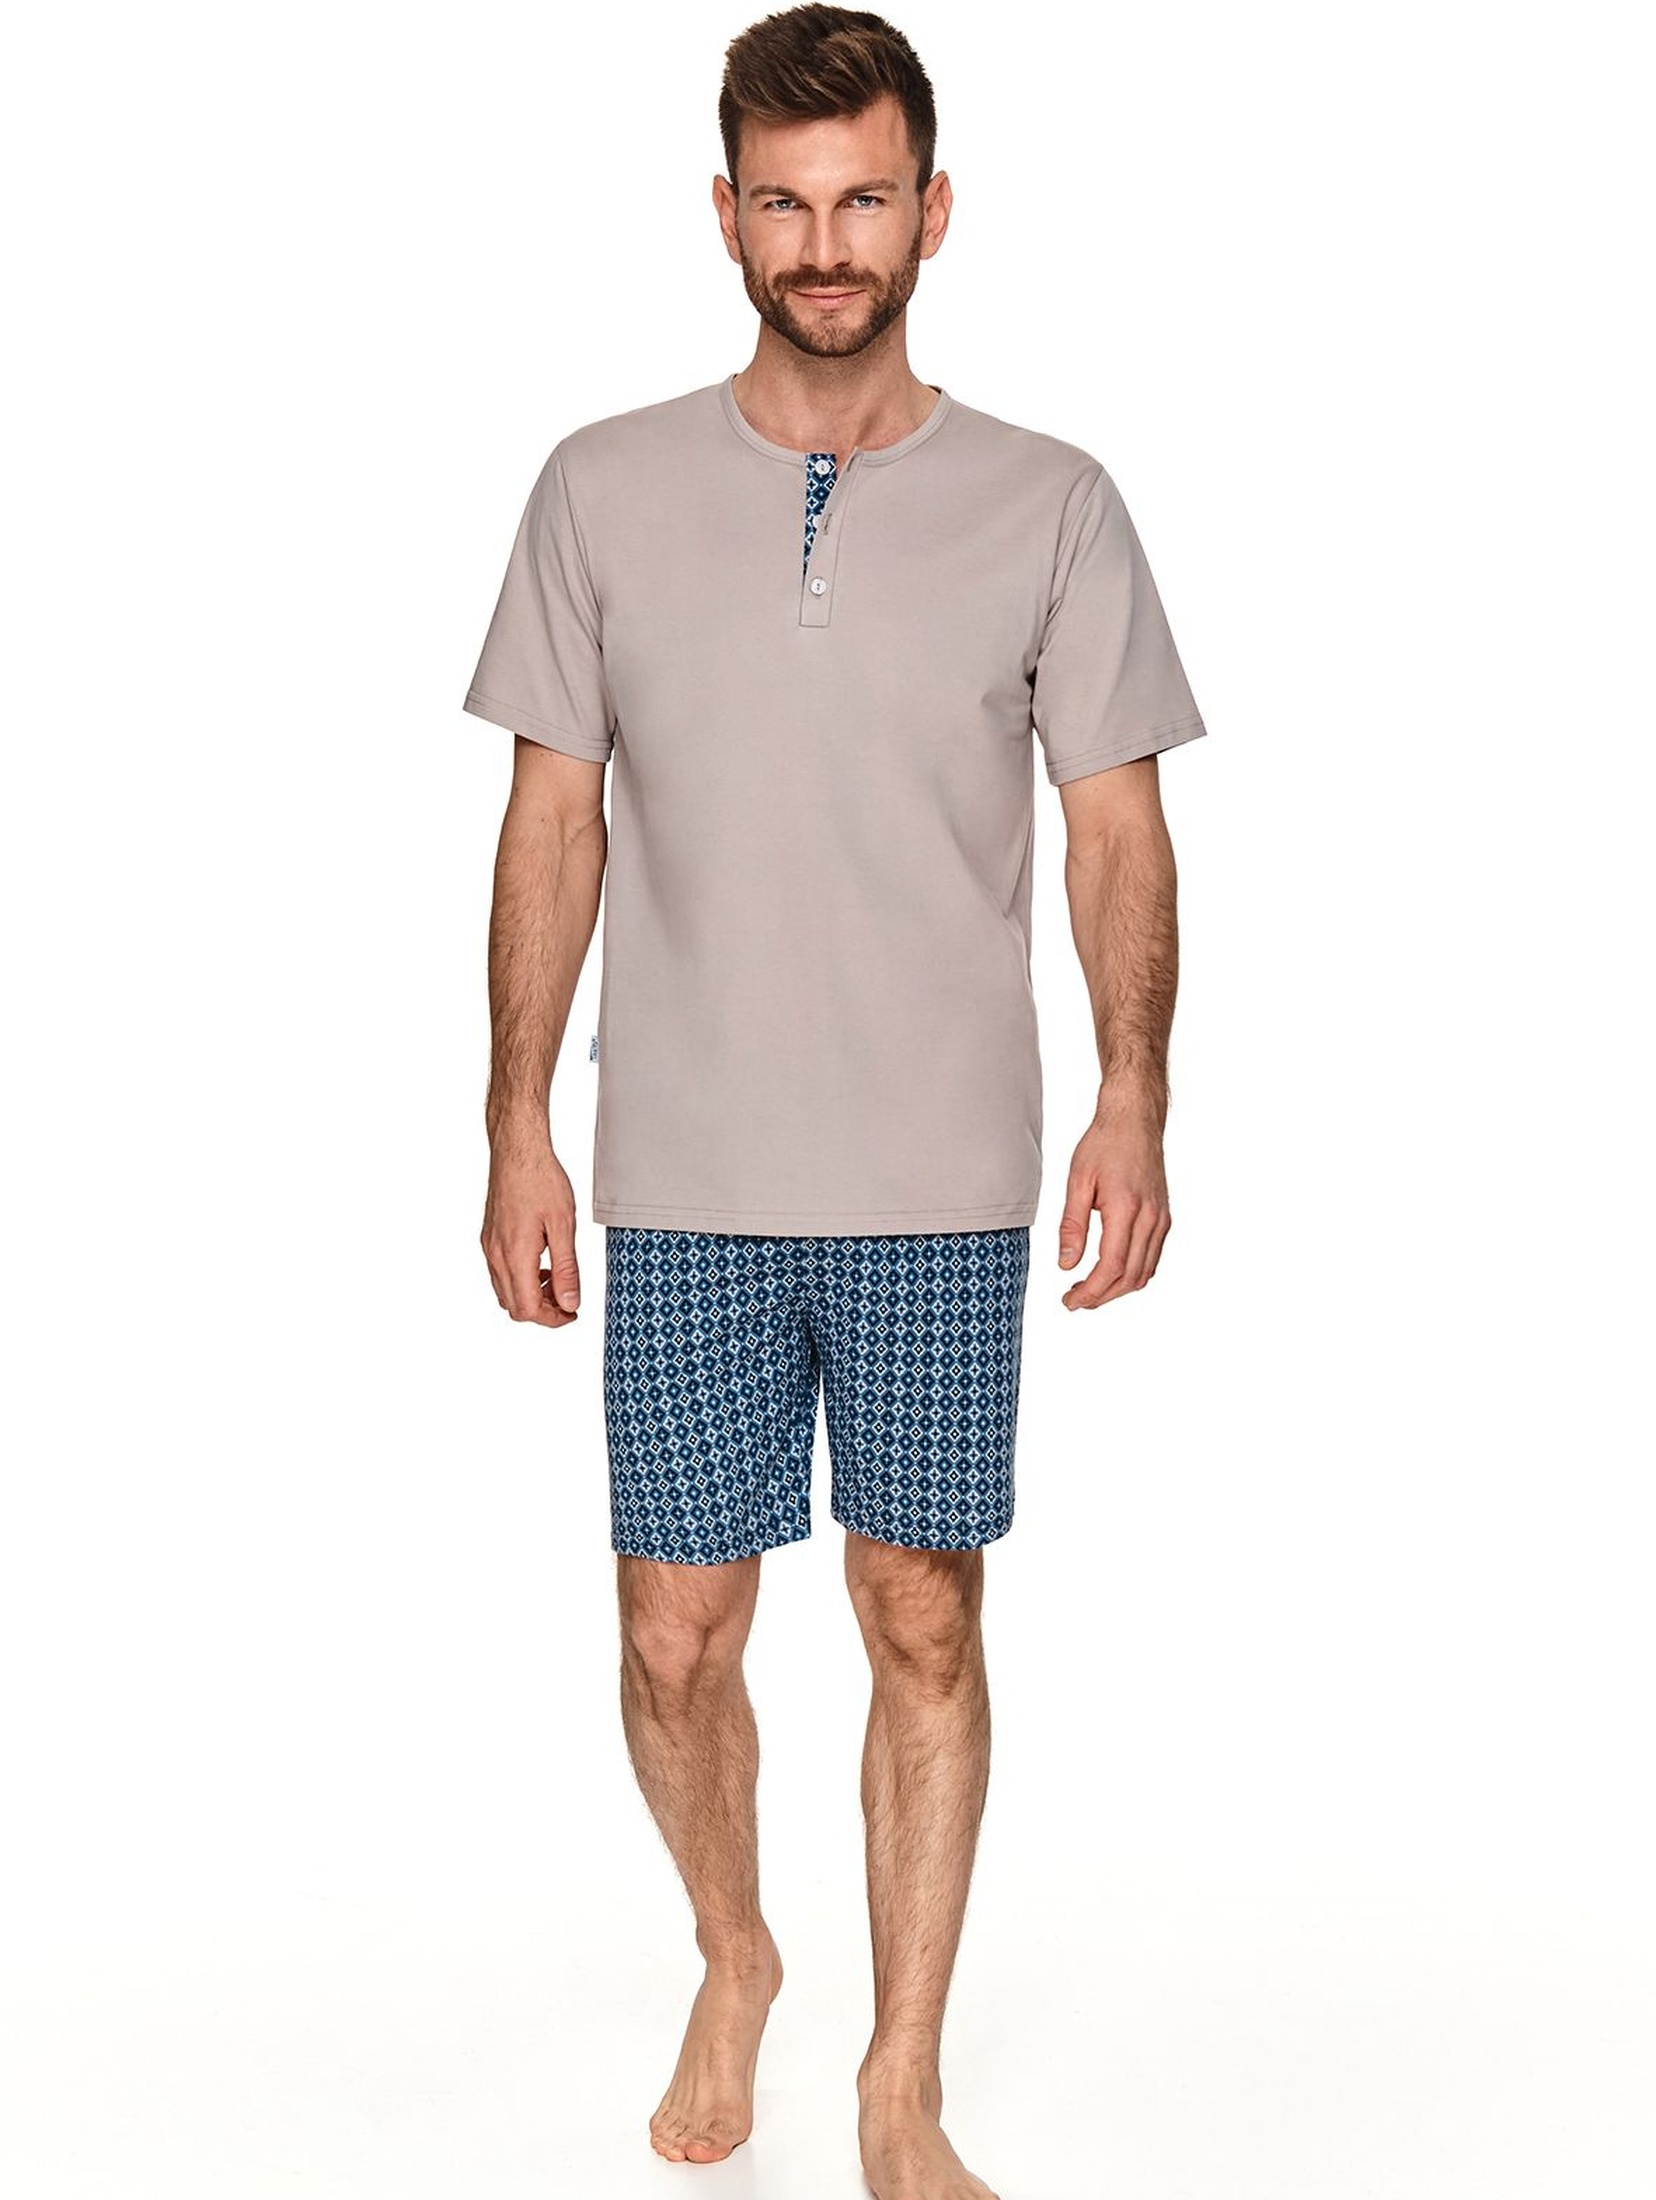 Dwuczęściowa piżama - beżowy T-shirt i krótkie spodnie